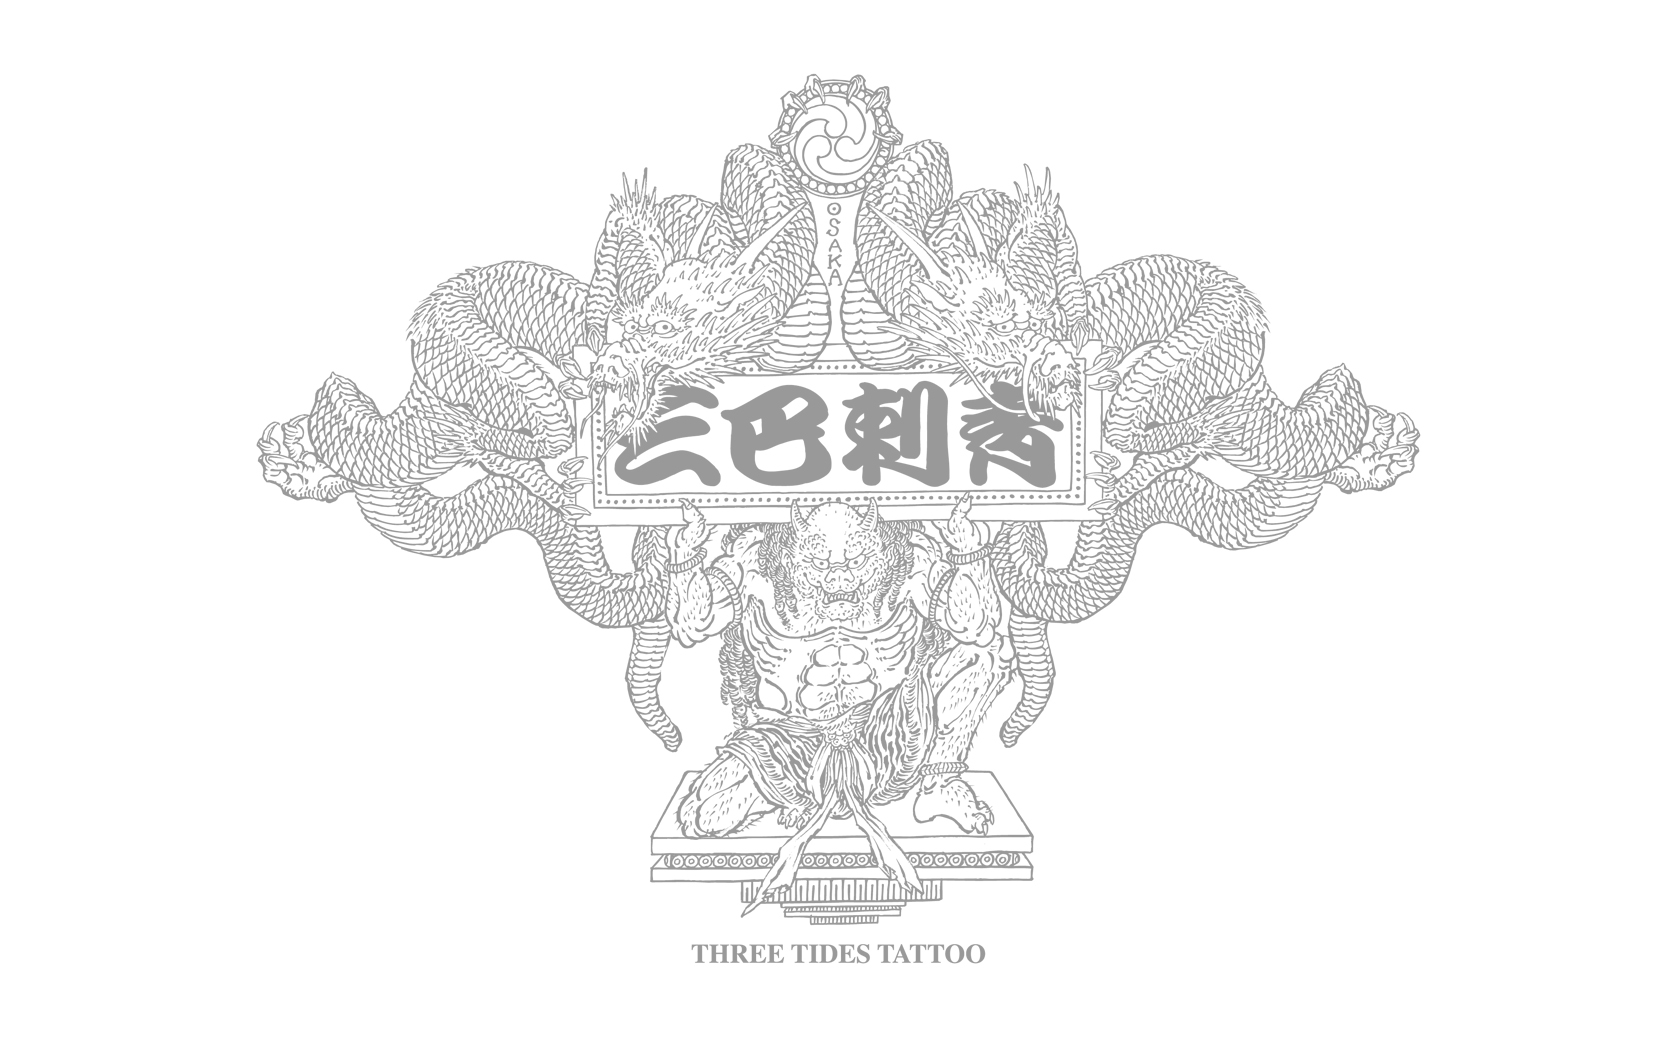 Wallpaper 壁紙 三巴彫 スリータイズ タトゥー Three Tides Tattoo 三巴刺青 大阪 東京